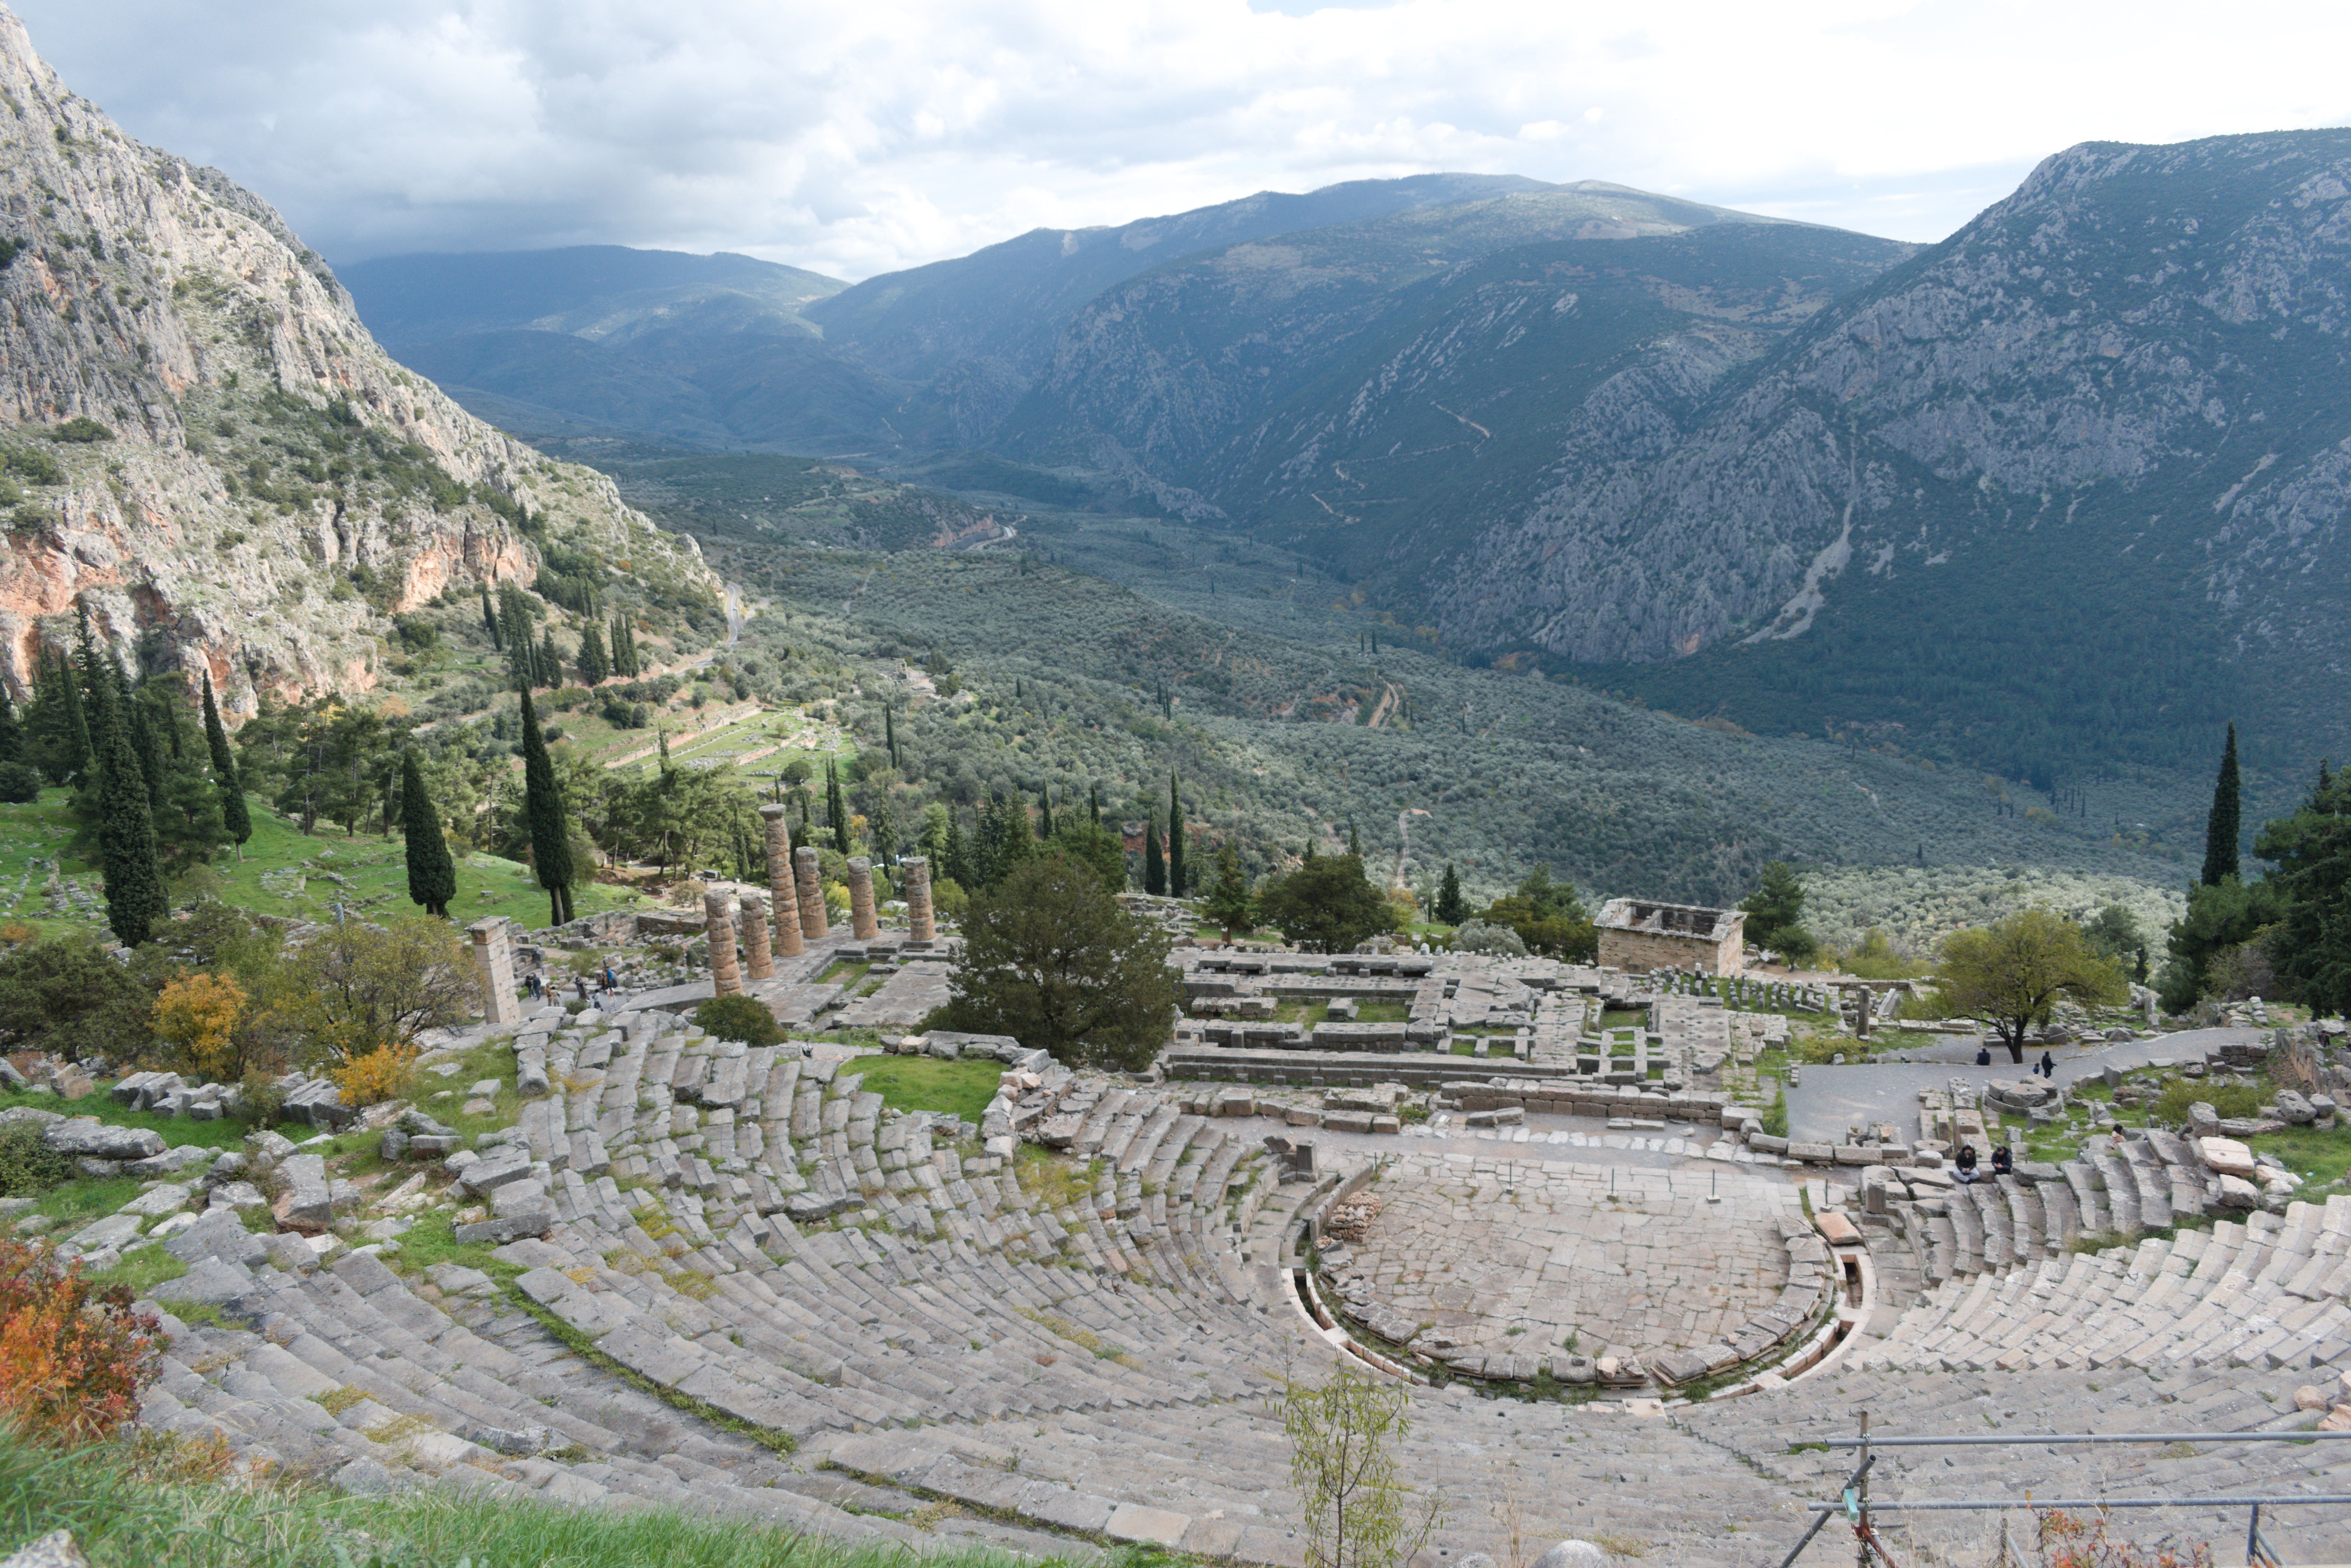 Uma visão geral do Delphi vista de cima